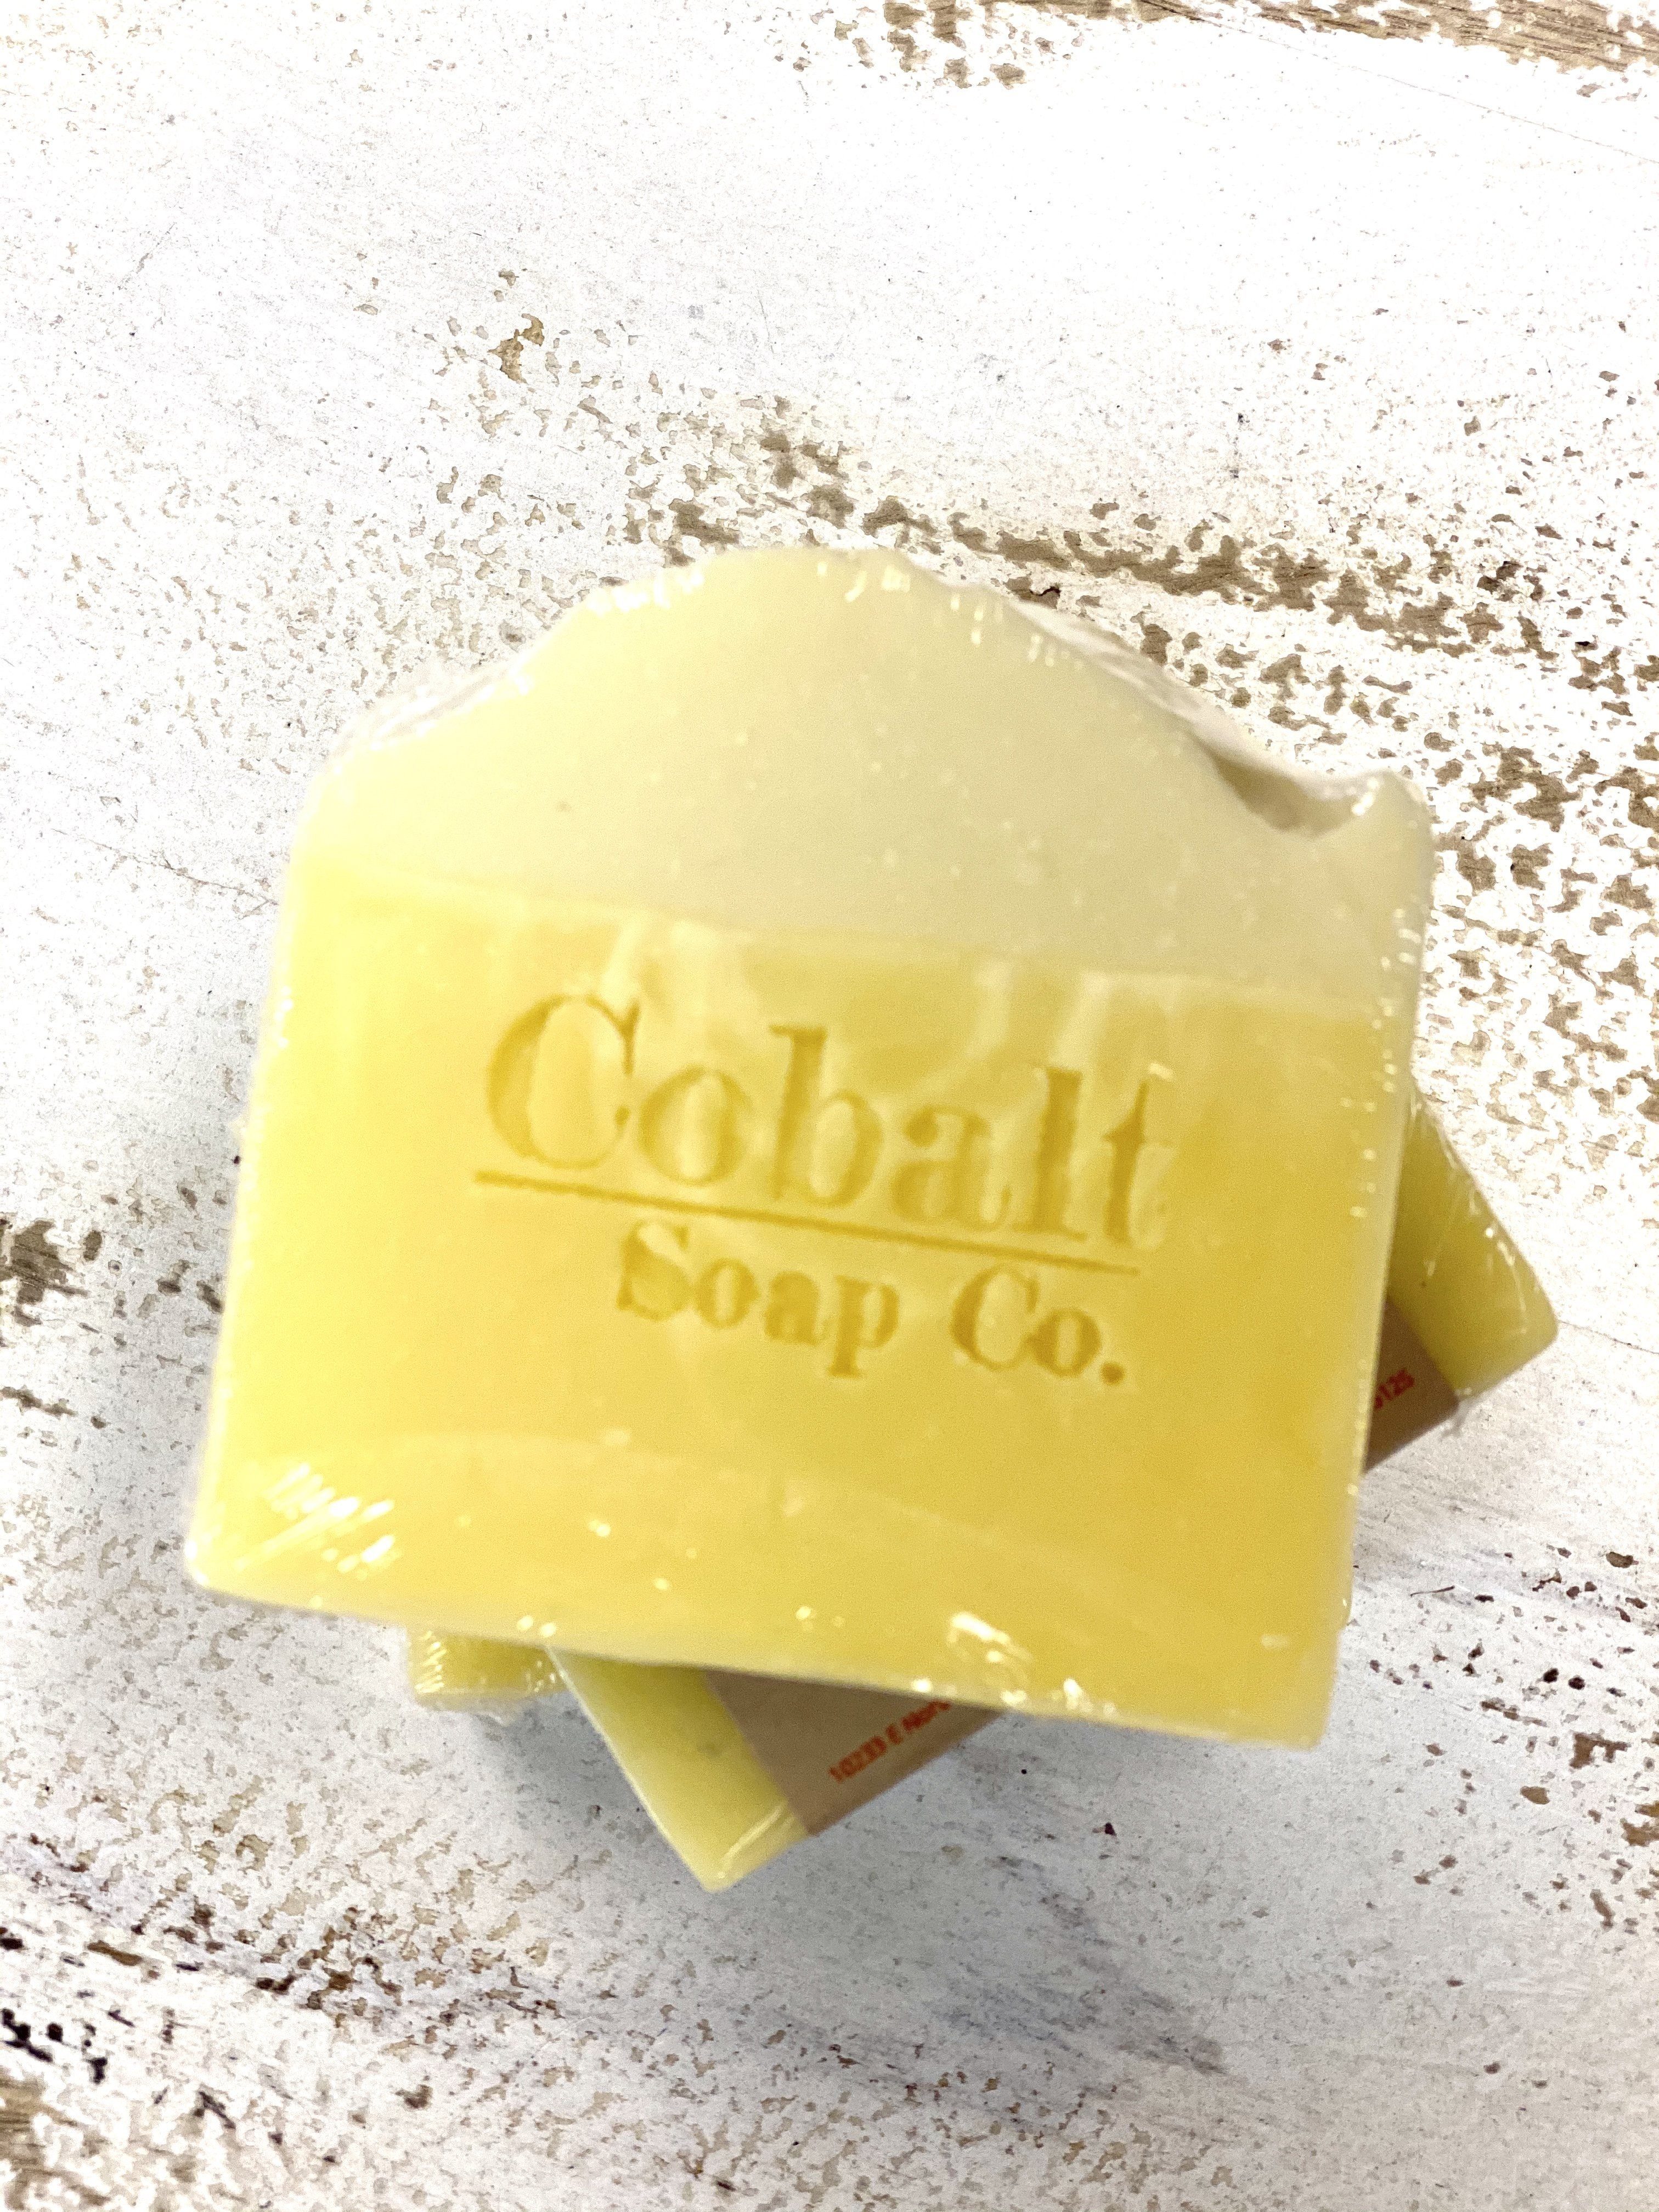 Jabón de cobalto no. 4 - Ralladura de limón